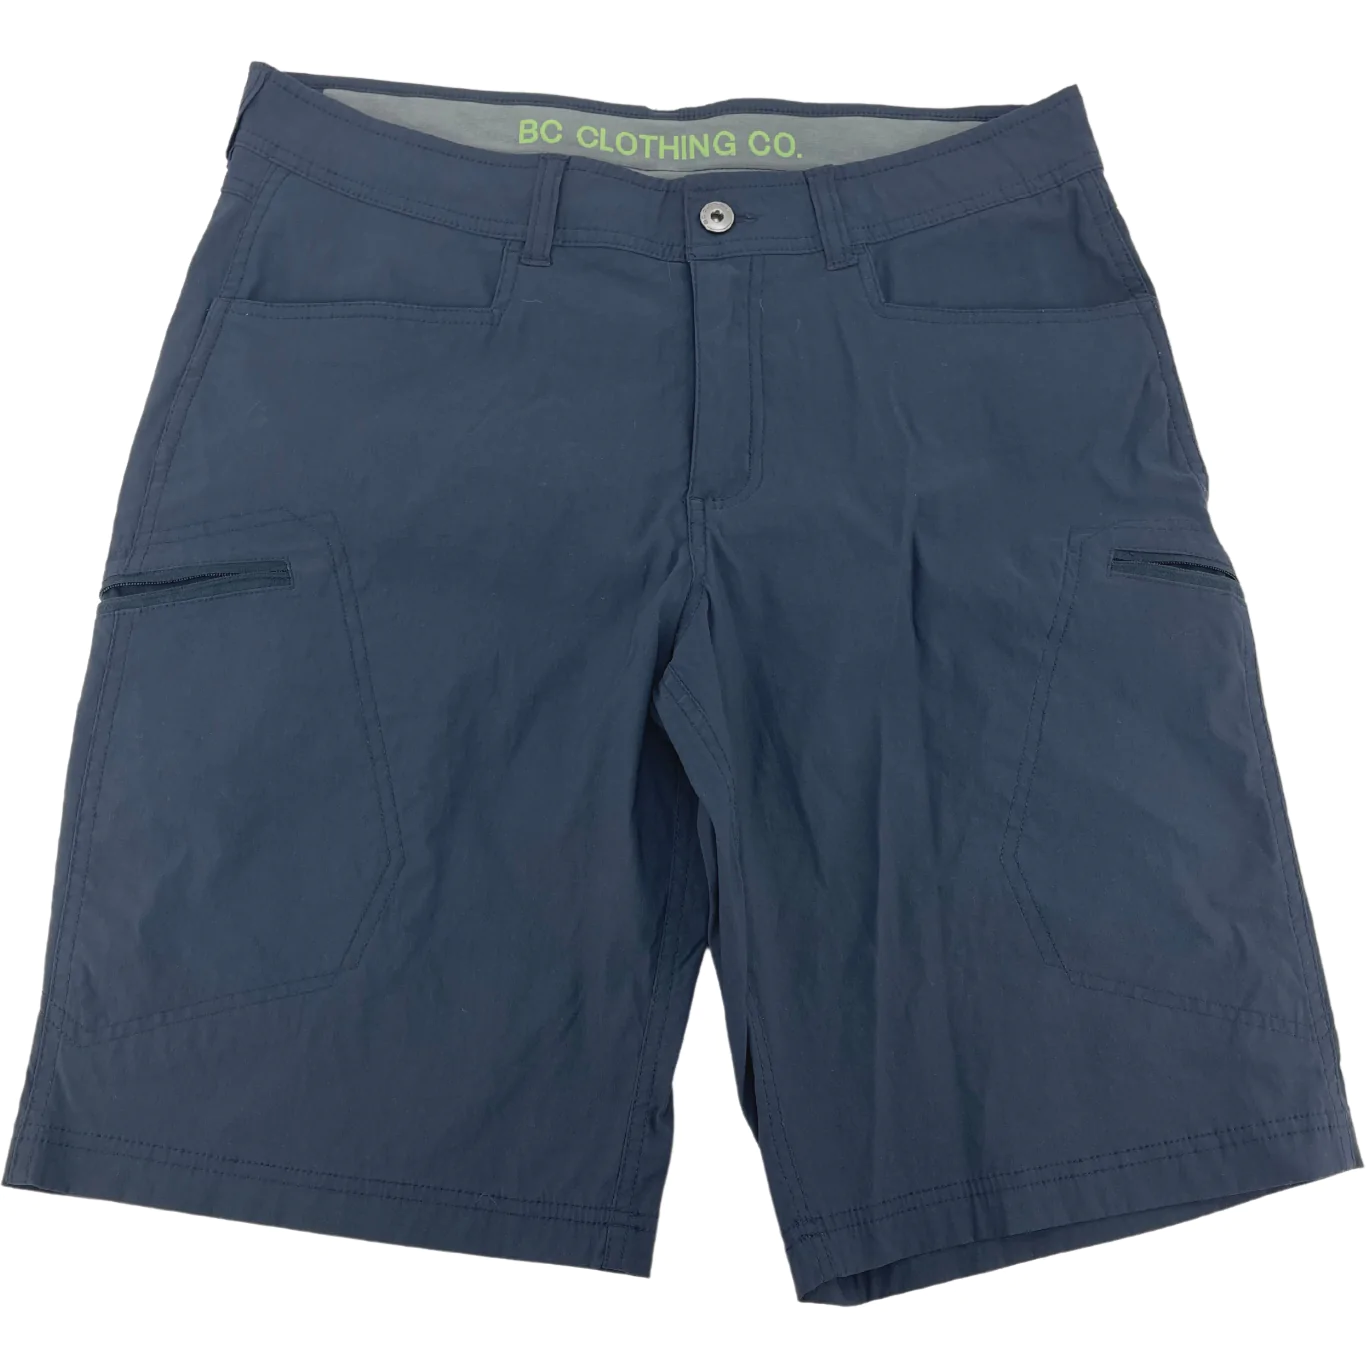 BC Clothing Men's Shorts / Navy / Size 32 **No Tags**